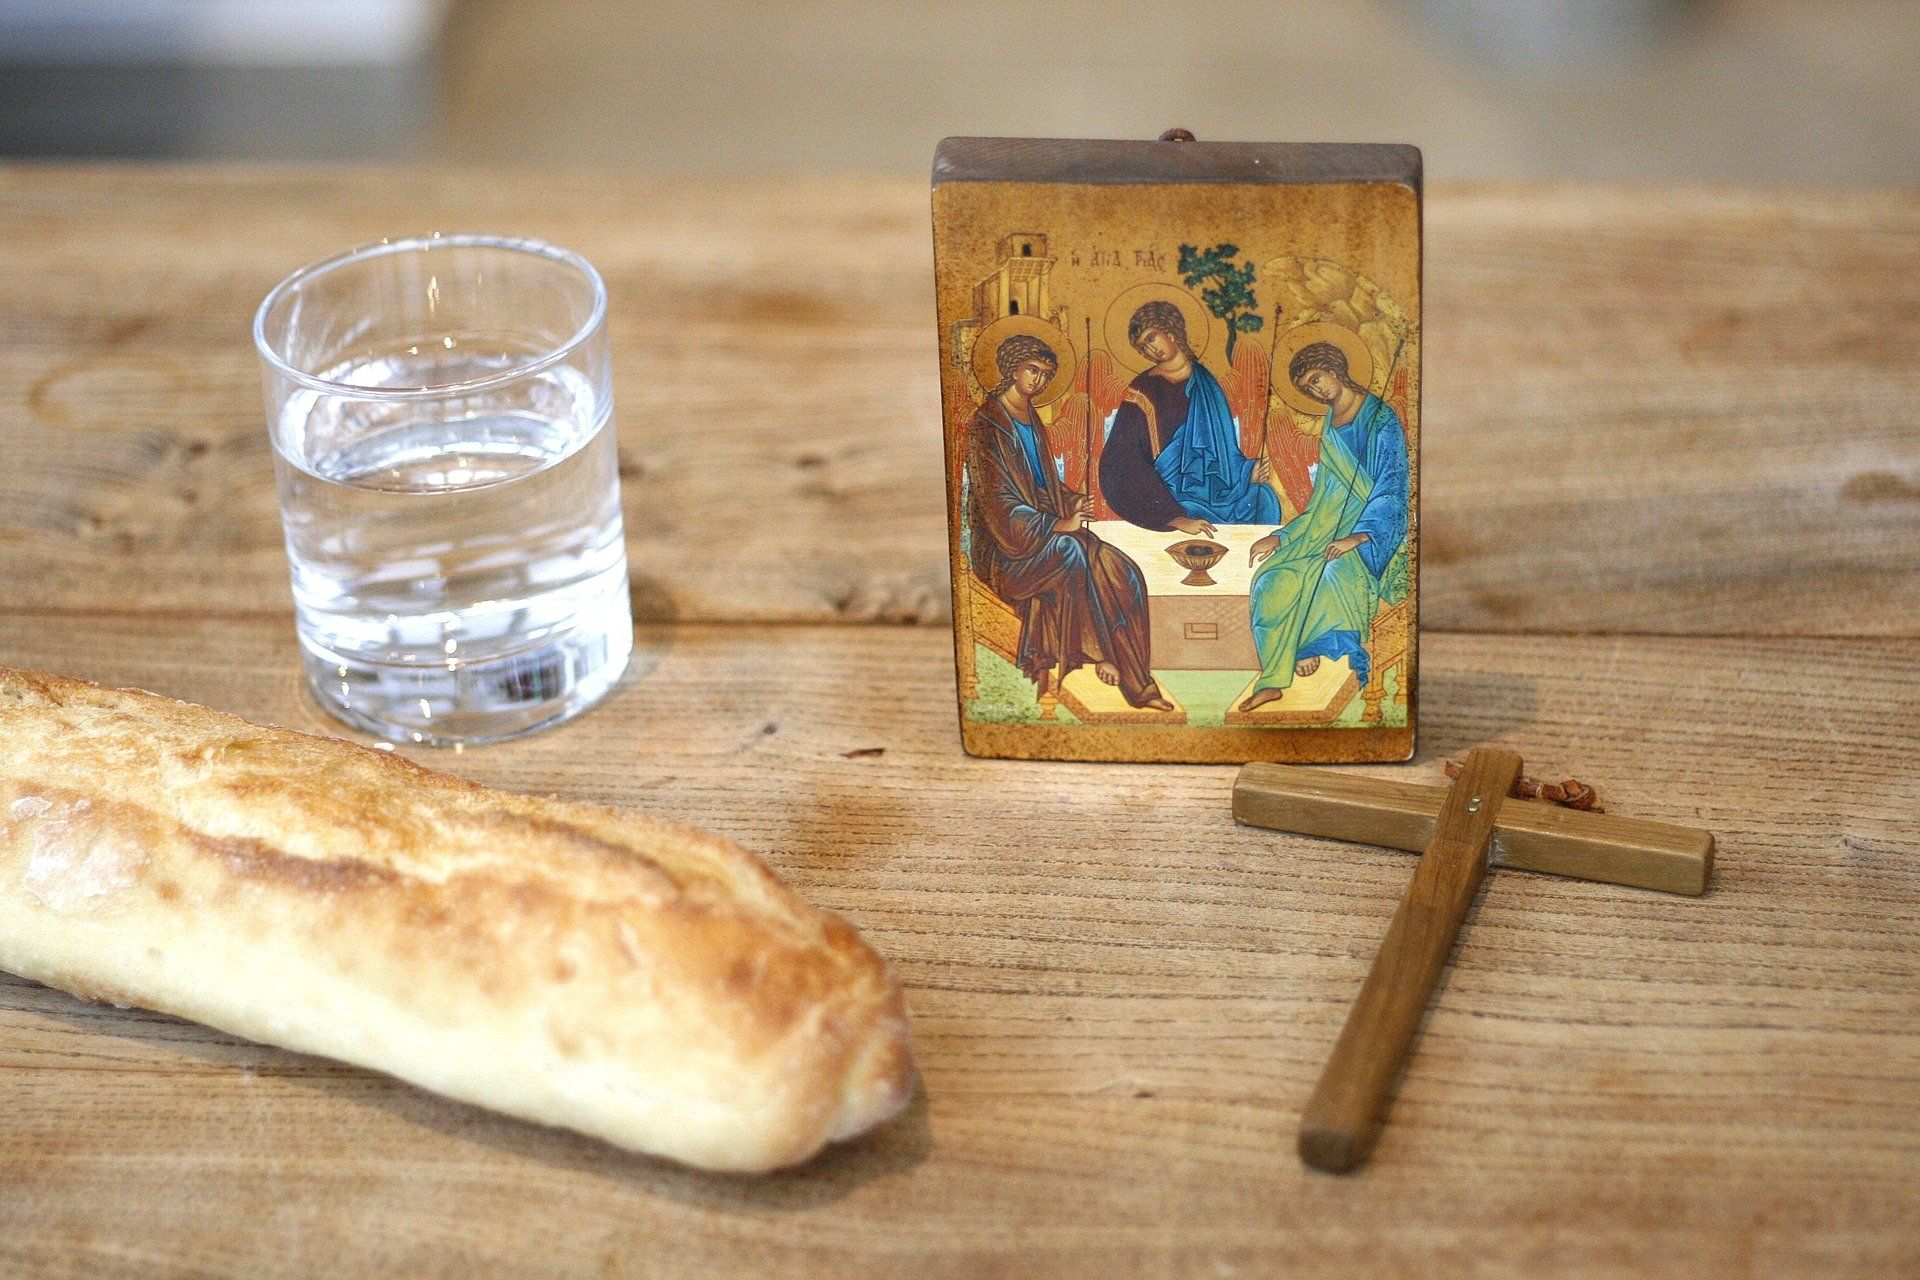 Tischplatte mit Brot, einem Glas Wasser, einem Kreuz und einem Bild von Jesus mit zwei Jüngern